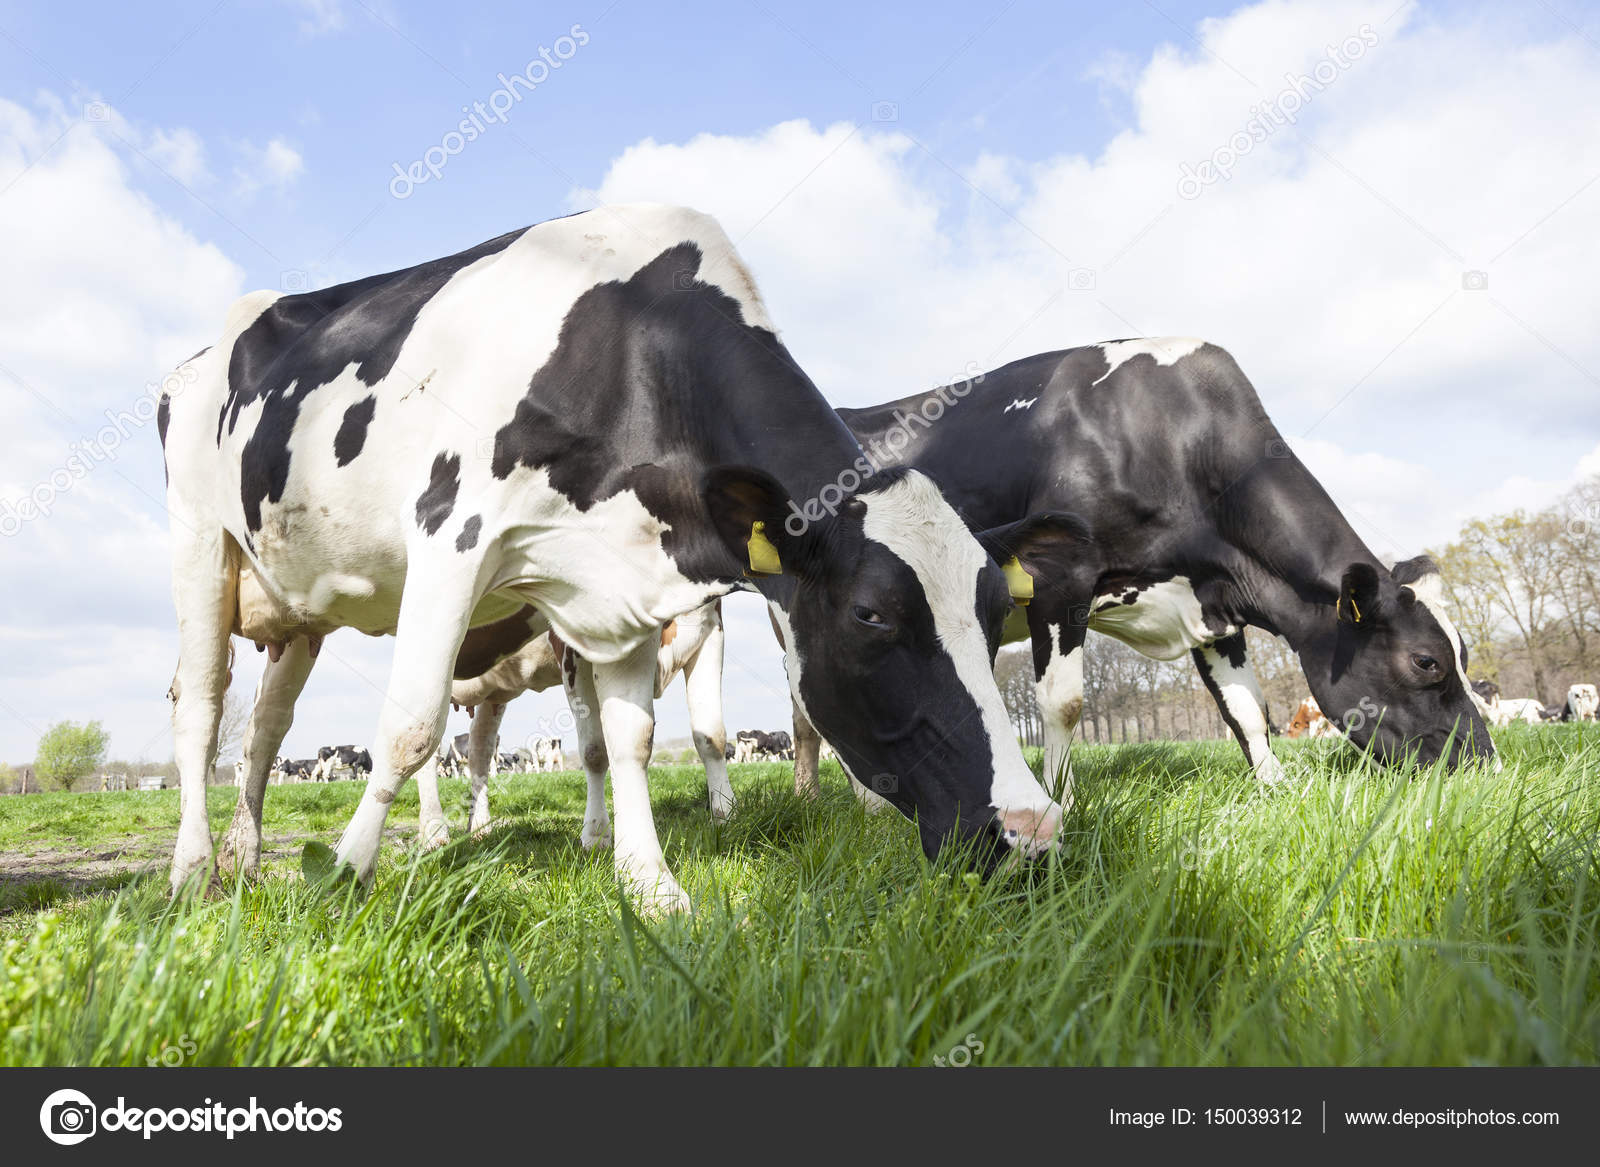 Close-up van zwart-witte koeien in Nederlandse weide zonnige lente Stockfoto, rechtenvrije foto door © #150039312